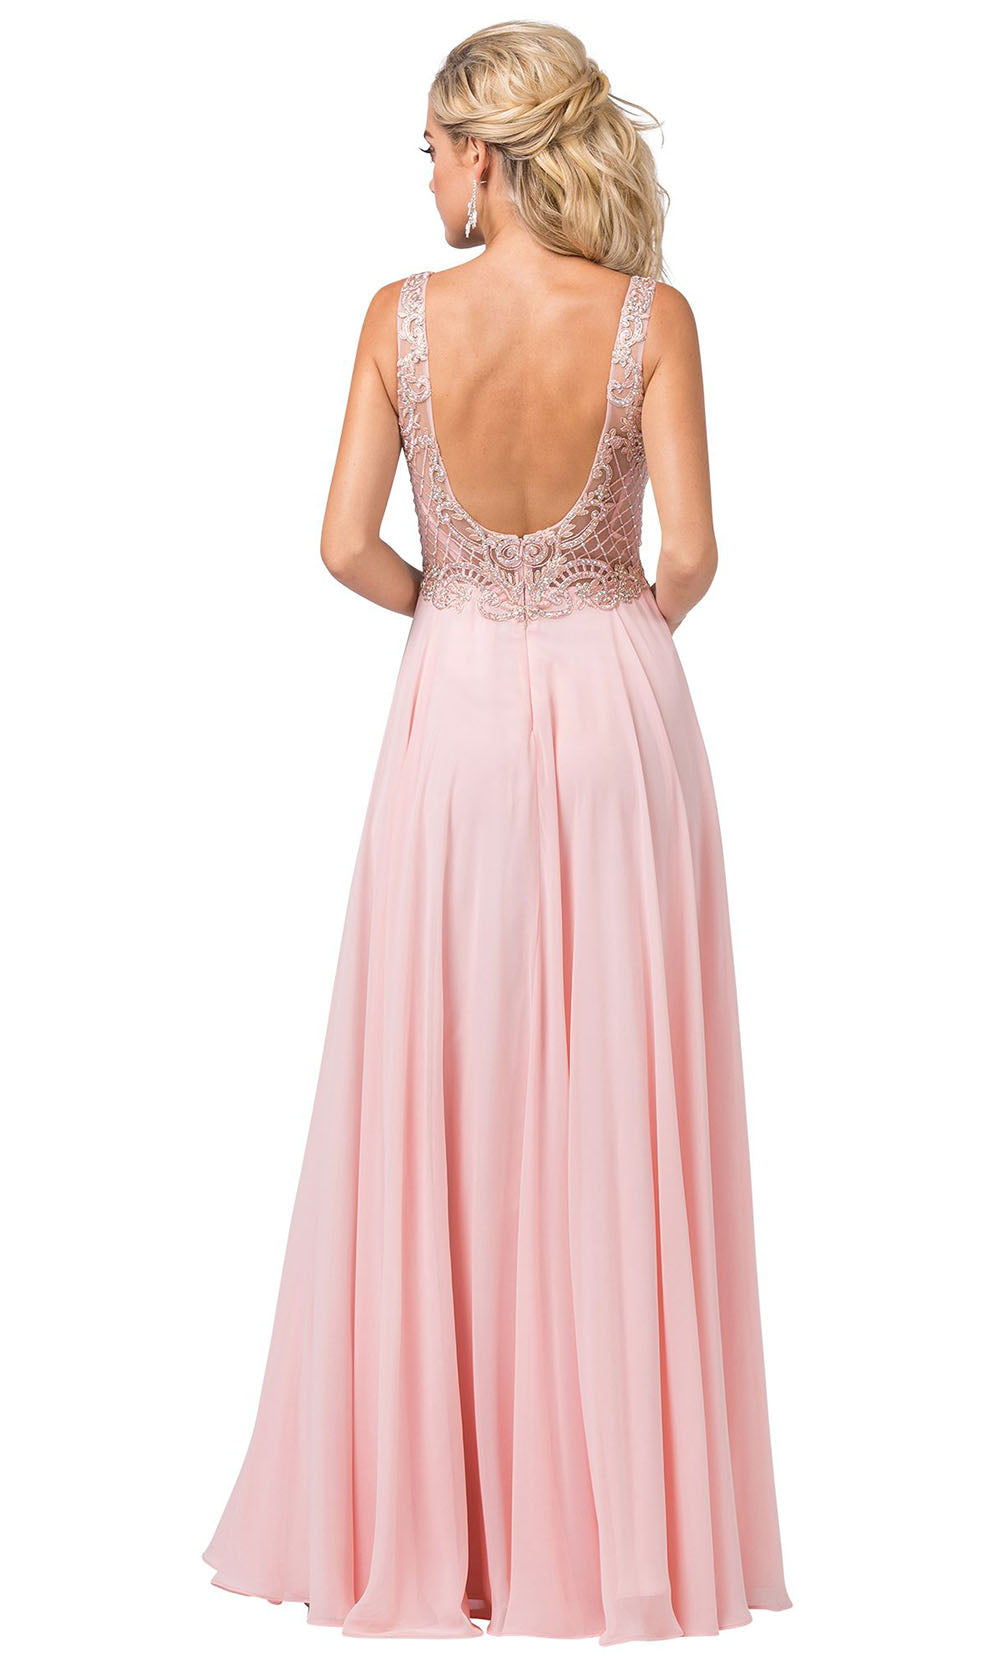 Dancing Queen - 2647 Jeweled Applique A-Line Dress In Pink